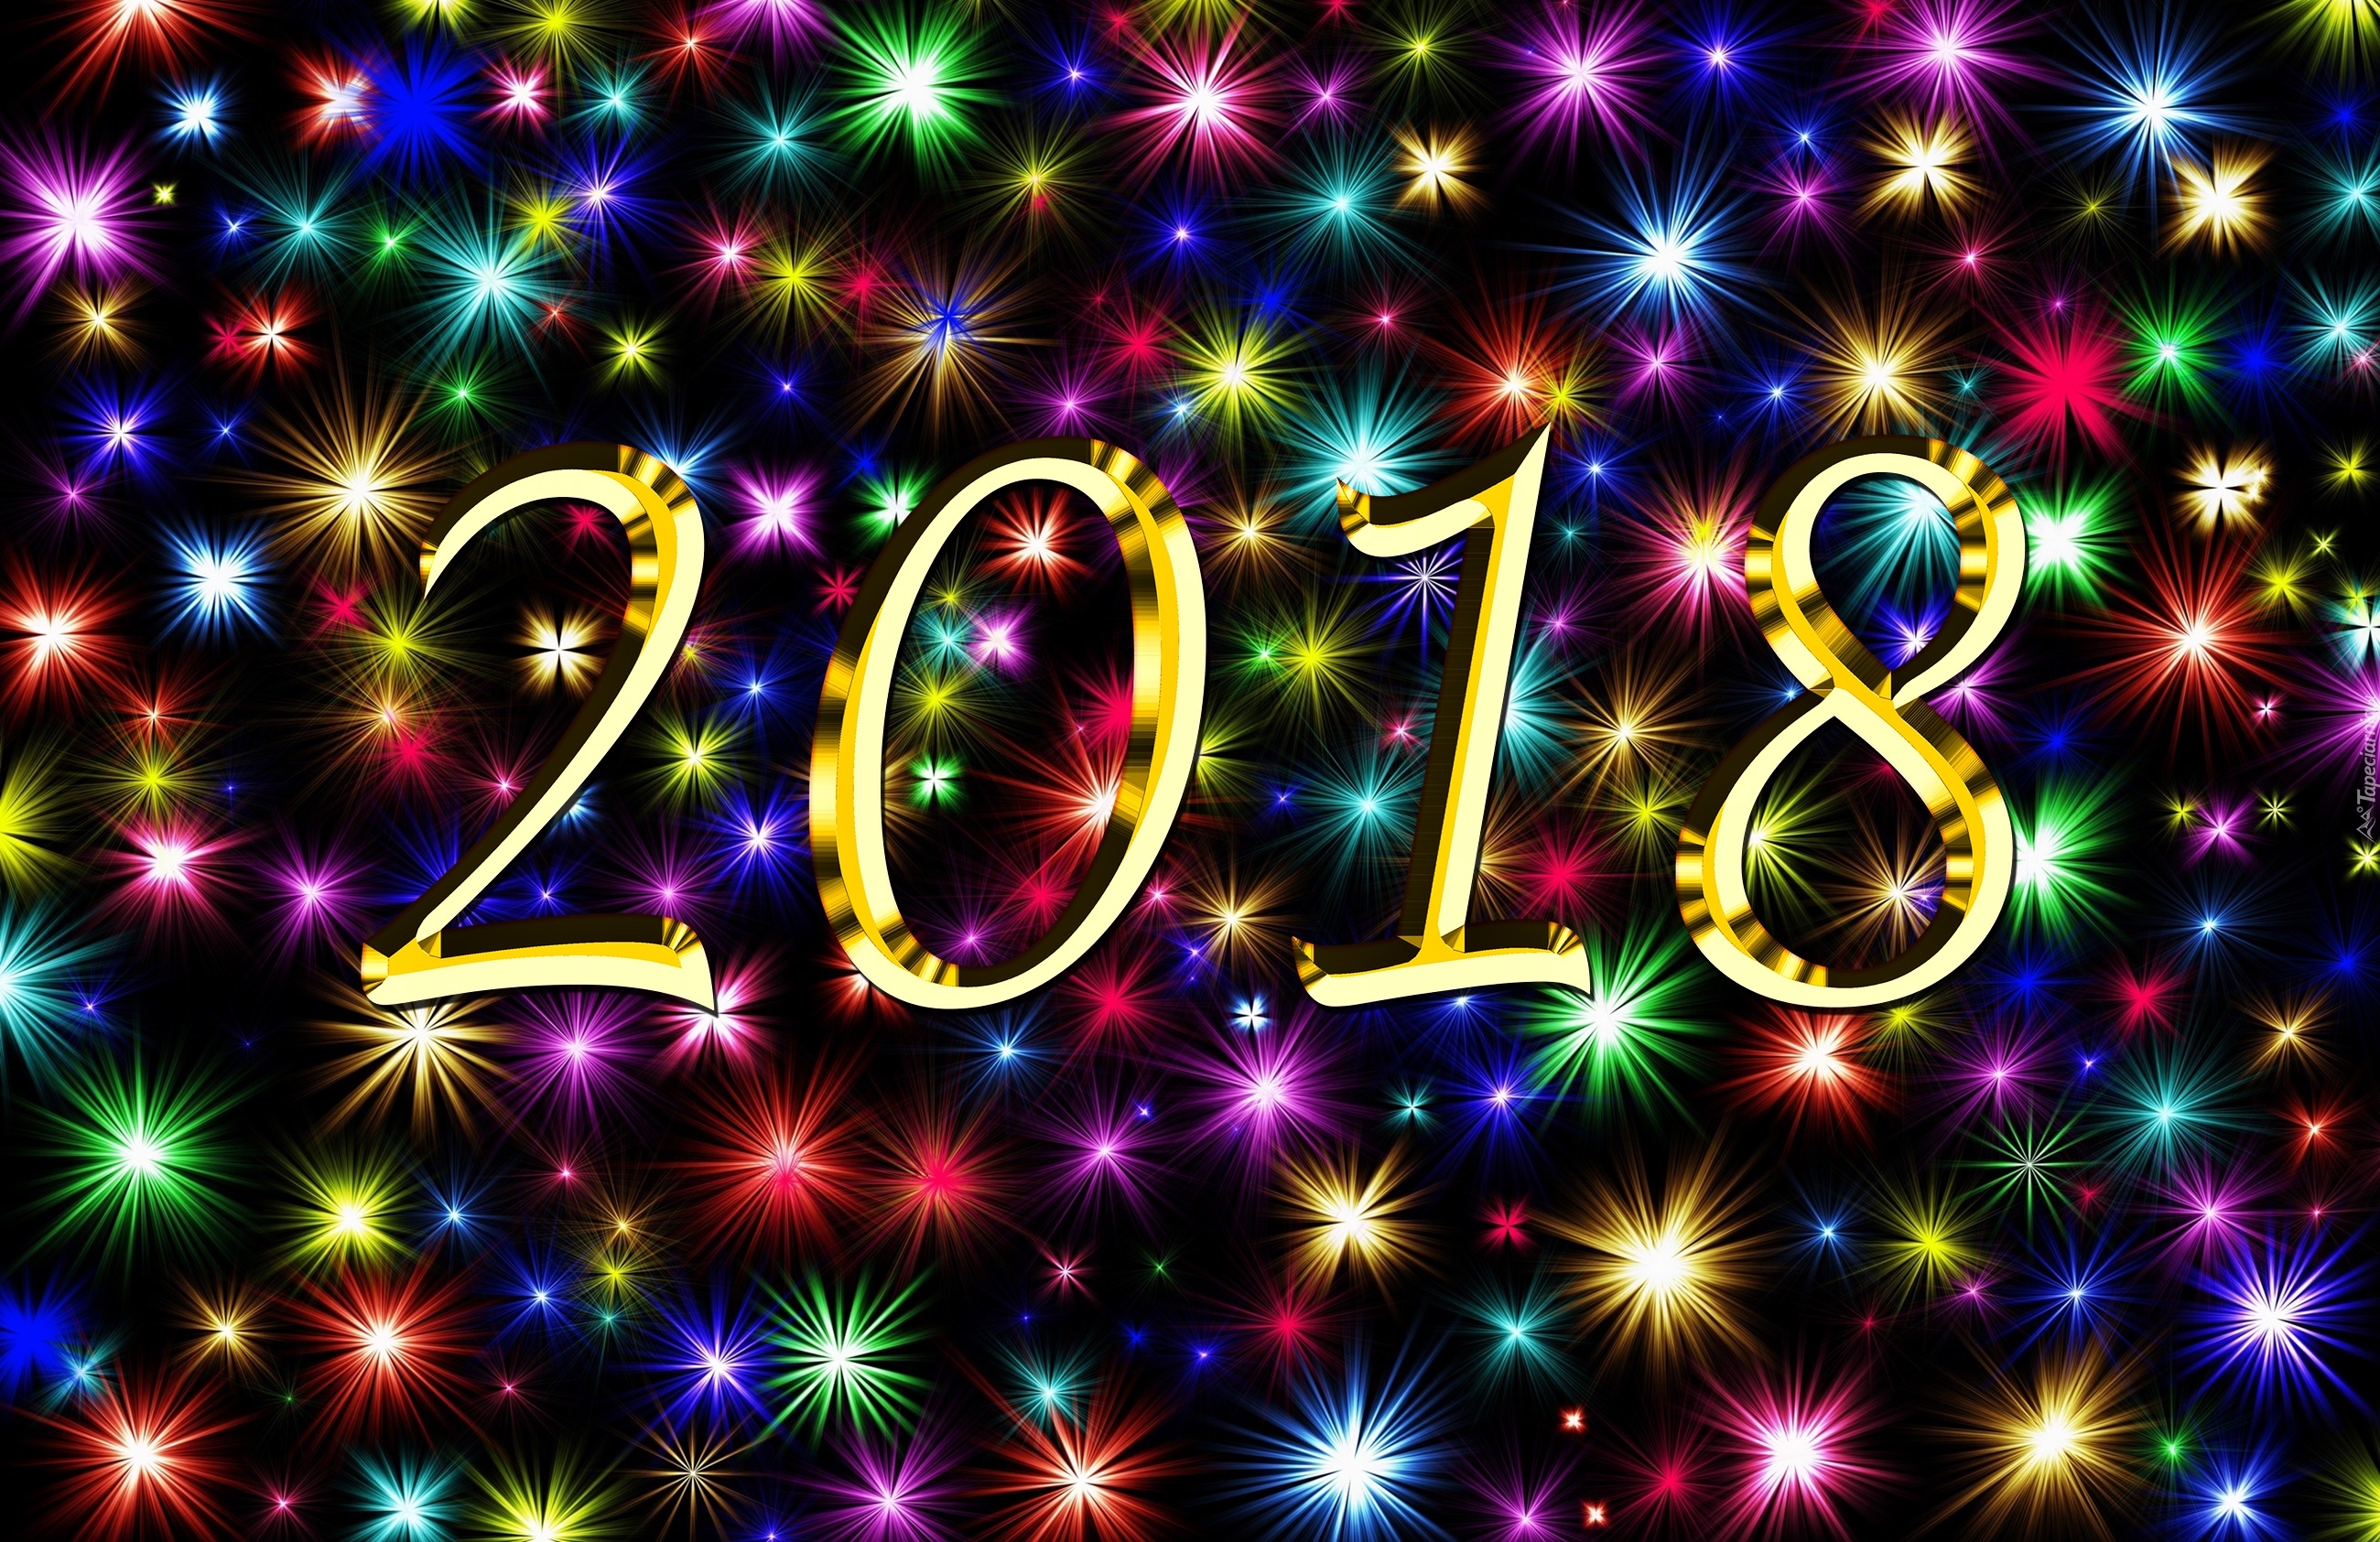 Nowy Rok, 2018, Sylwester, Fajerwerki, Grafika 2D